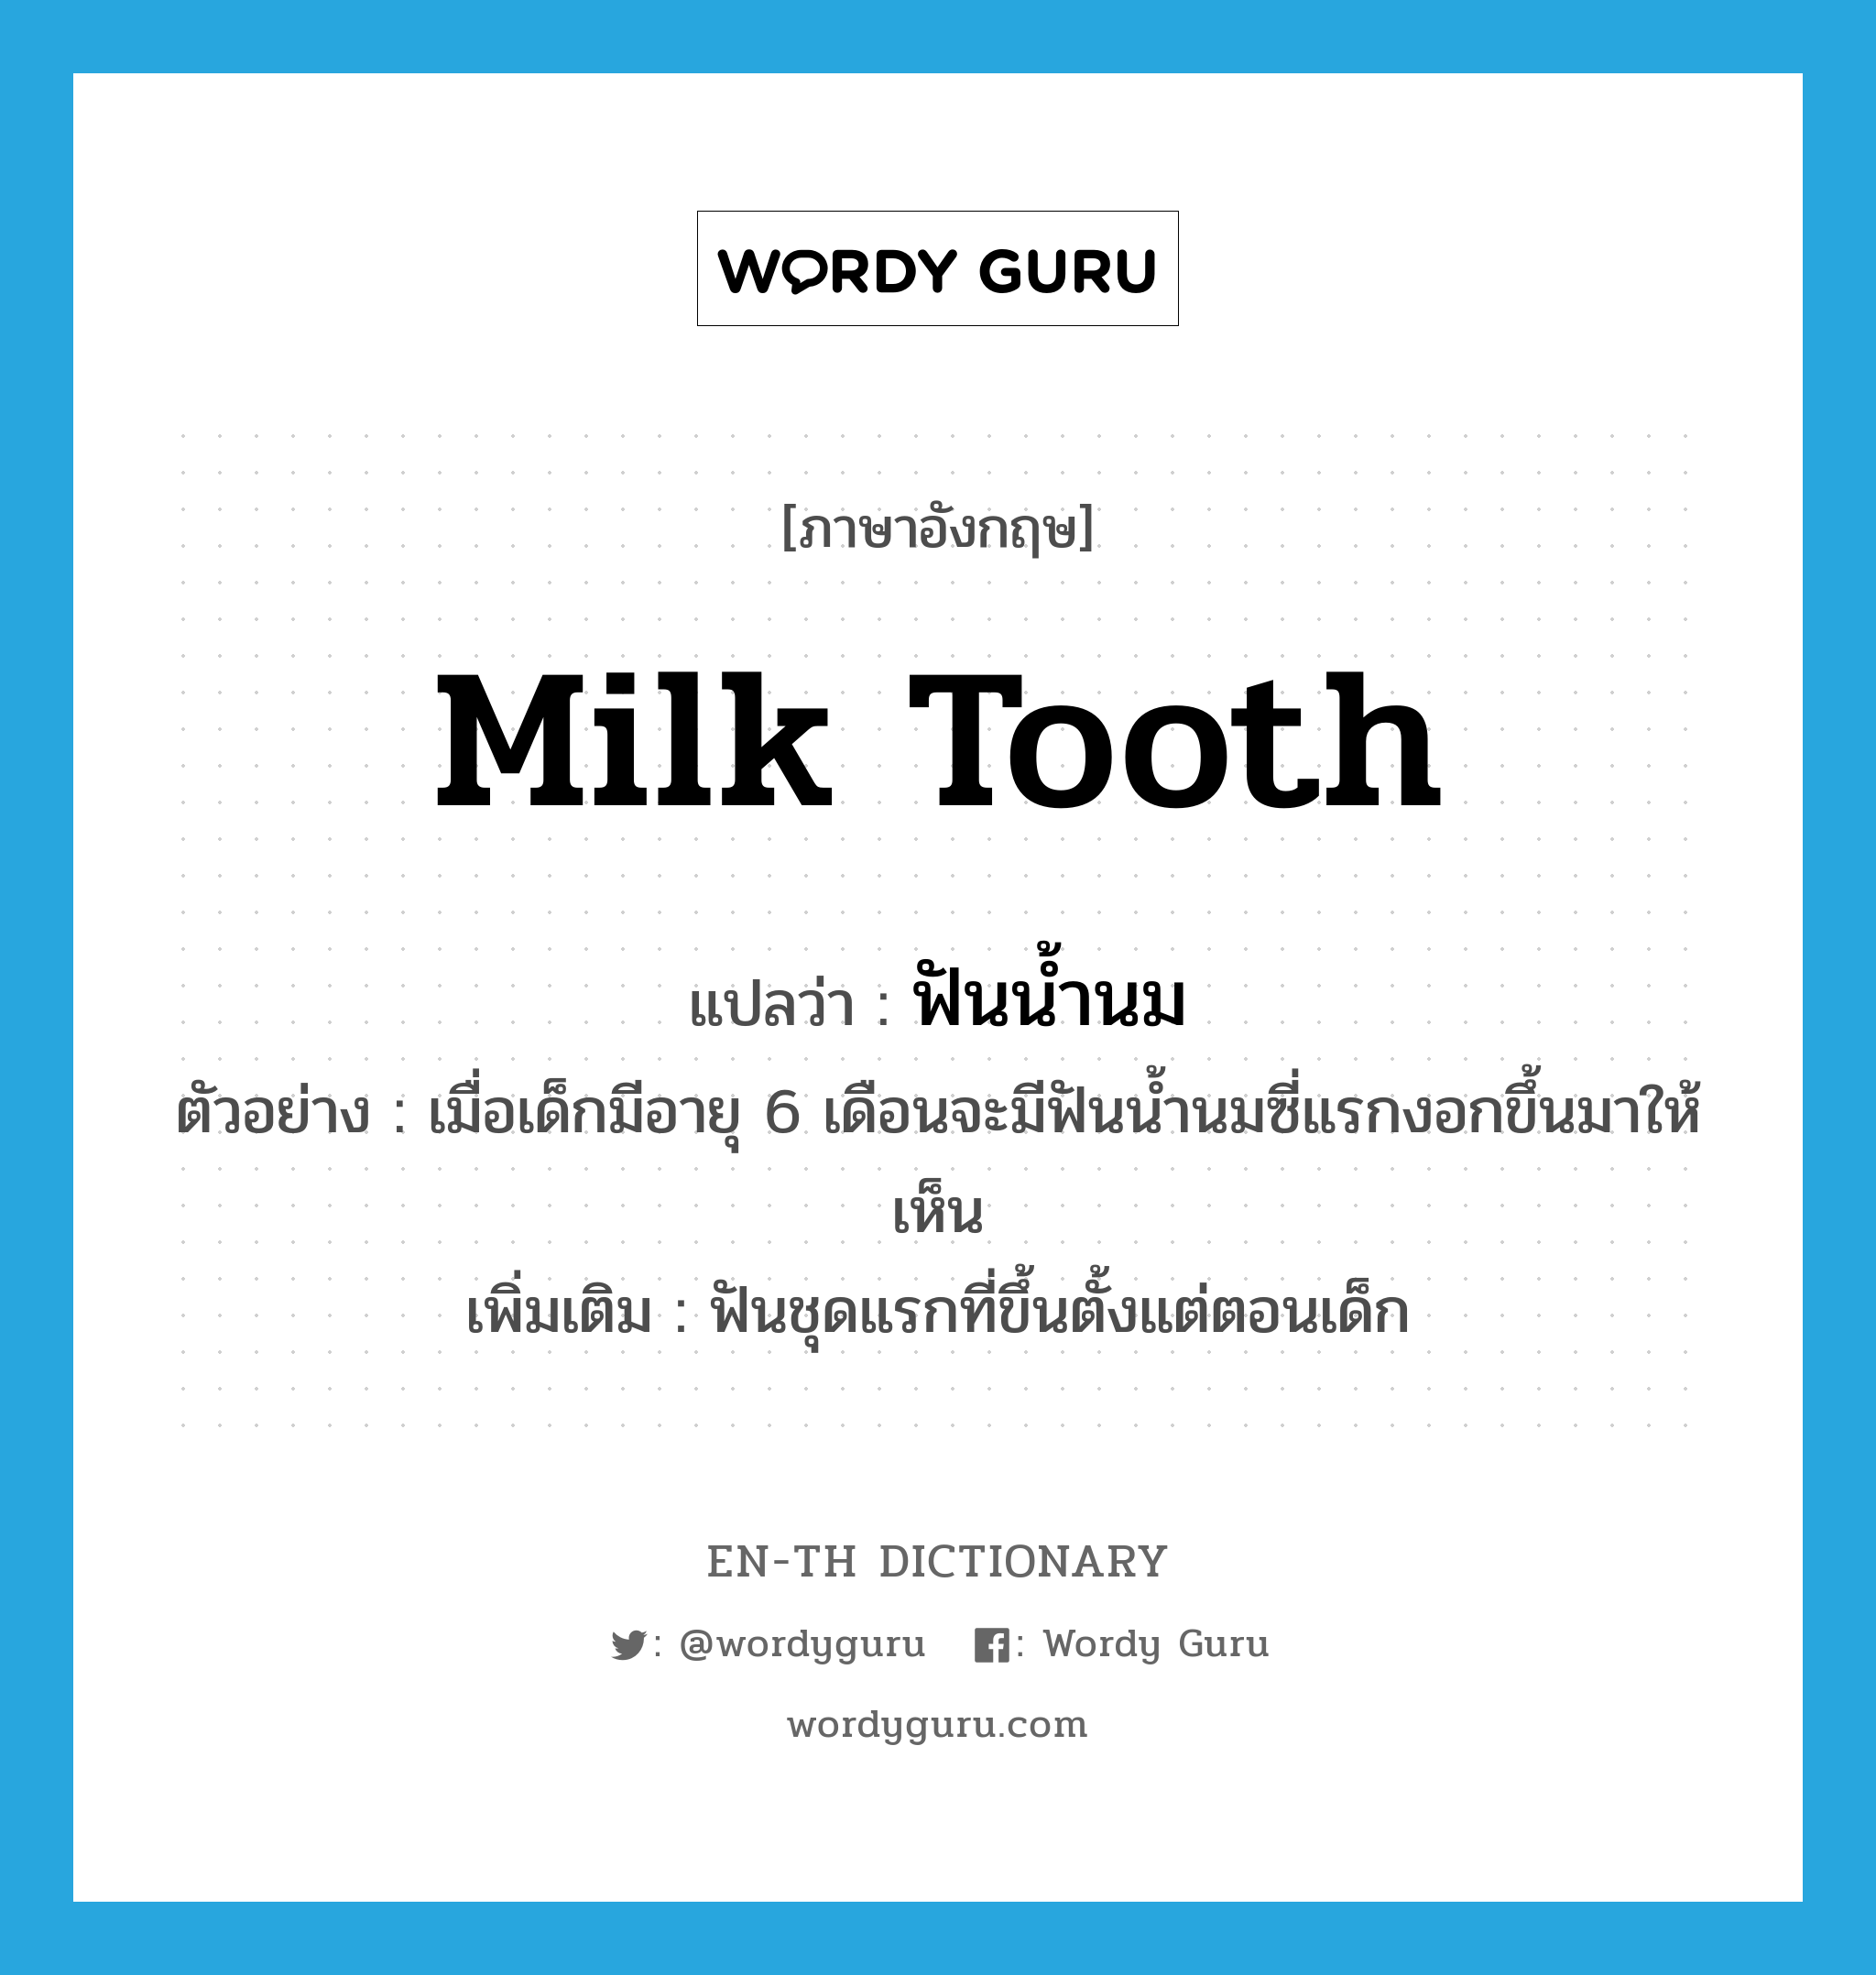 ฟันน้ำนม ภาษาอังกฤษ?, คำศัพท์ภาษาอังกฤษ ฟันน้ำนม แปลว่า milk tooth ประเภท N ตัวอย่าง เมื่อเด็กมีอายุ 6 เดือนจะมีฟันน้ำนมซี่แรกงอกขึ้นมาให้เห็น เพิ่มเติม ฟันชุดแรกที่ขึ้นตั้งแต่ตอนเด็ก หมวด N